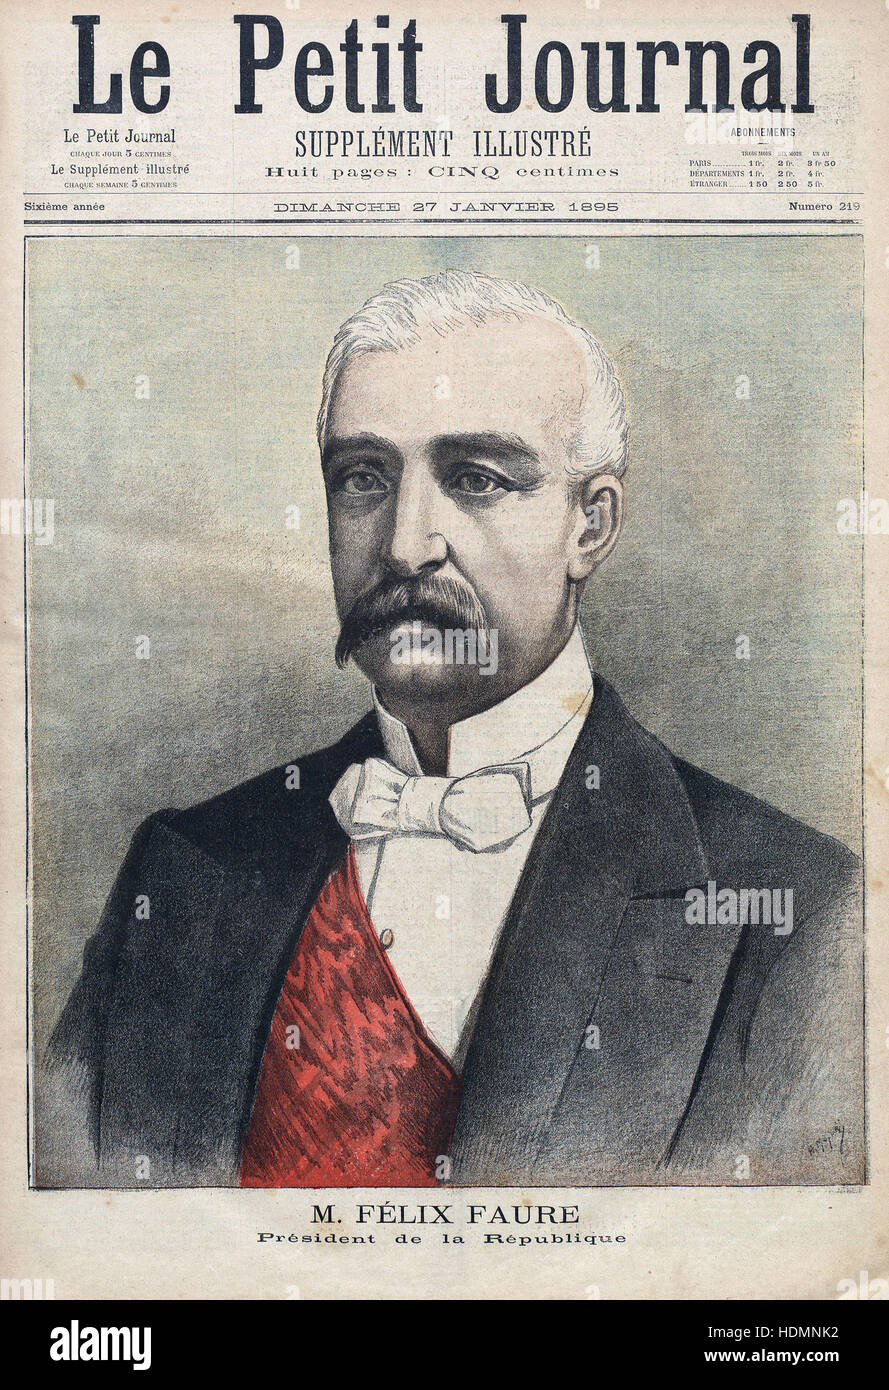 'Le Petit Journal' - M. Felix Faure President de la République - 1895 Stock Photo